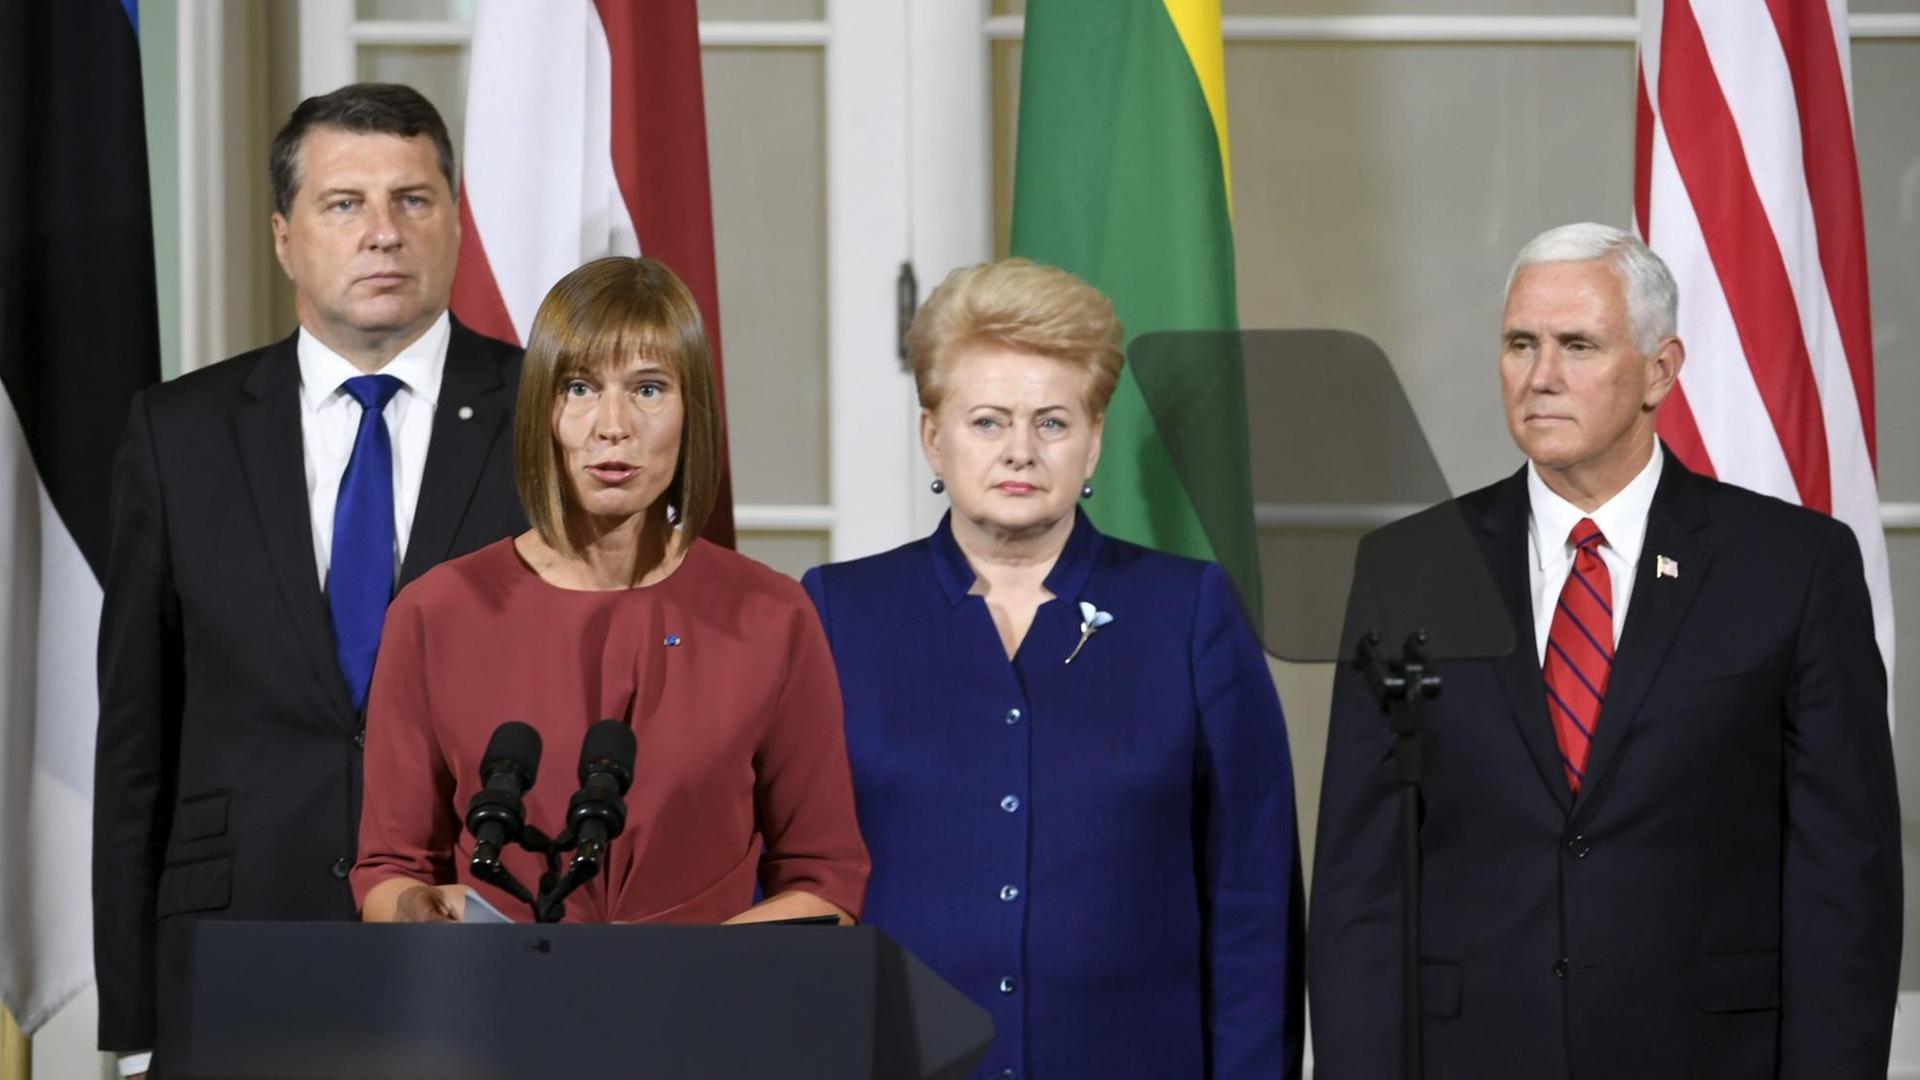 Der lettische Präsident Raimond Vejonis, Estlands Staatschefin Kersti Kaljulaid und Litauens Präsidentin Dalia Grybauskaite bei einer Pressekonferenz mit US-Vizepräsident Mike Pence in Tallinn.